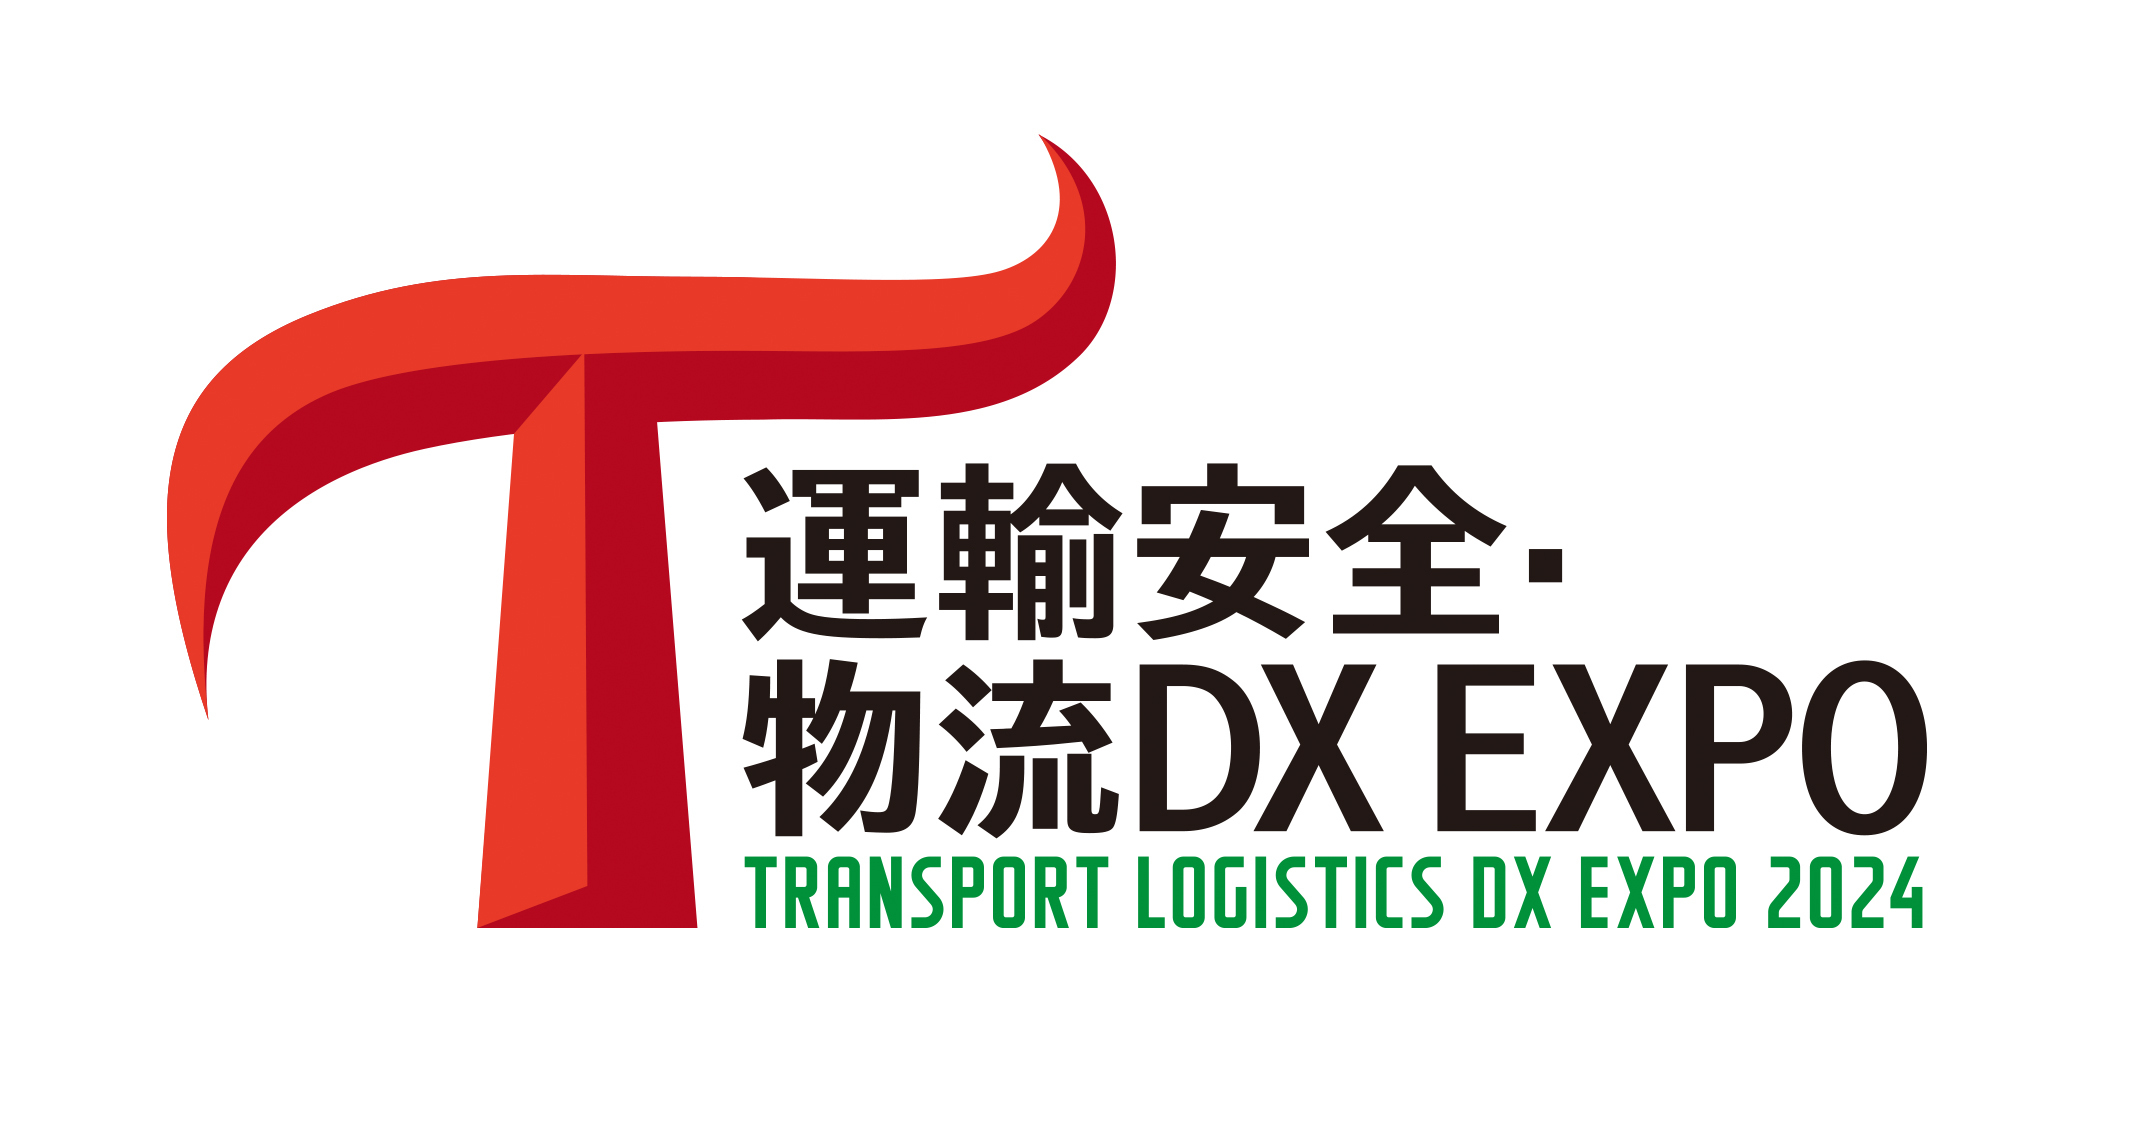 運輸・物流業界のDXを”安全”から考える！
「運輸安全・物流DX EXPO 2024」
5月29日(水)～31日(金)に東京ビッグサイトで開催